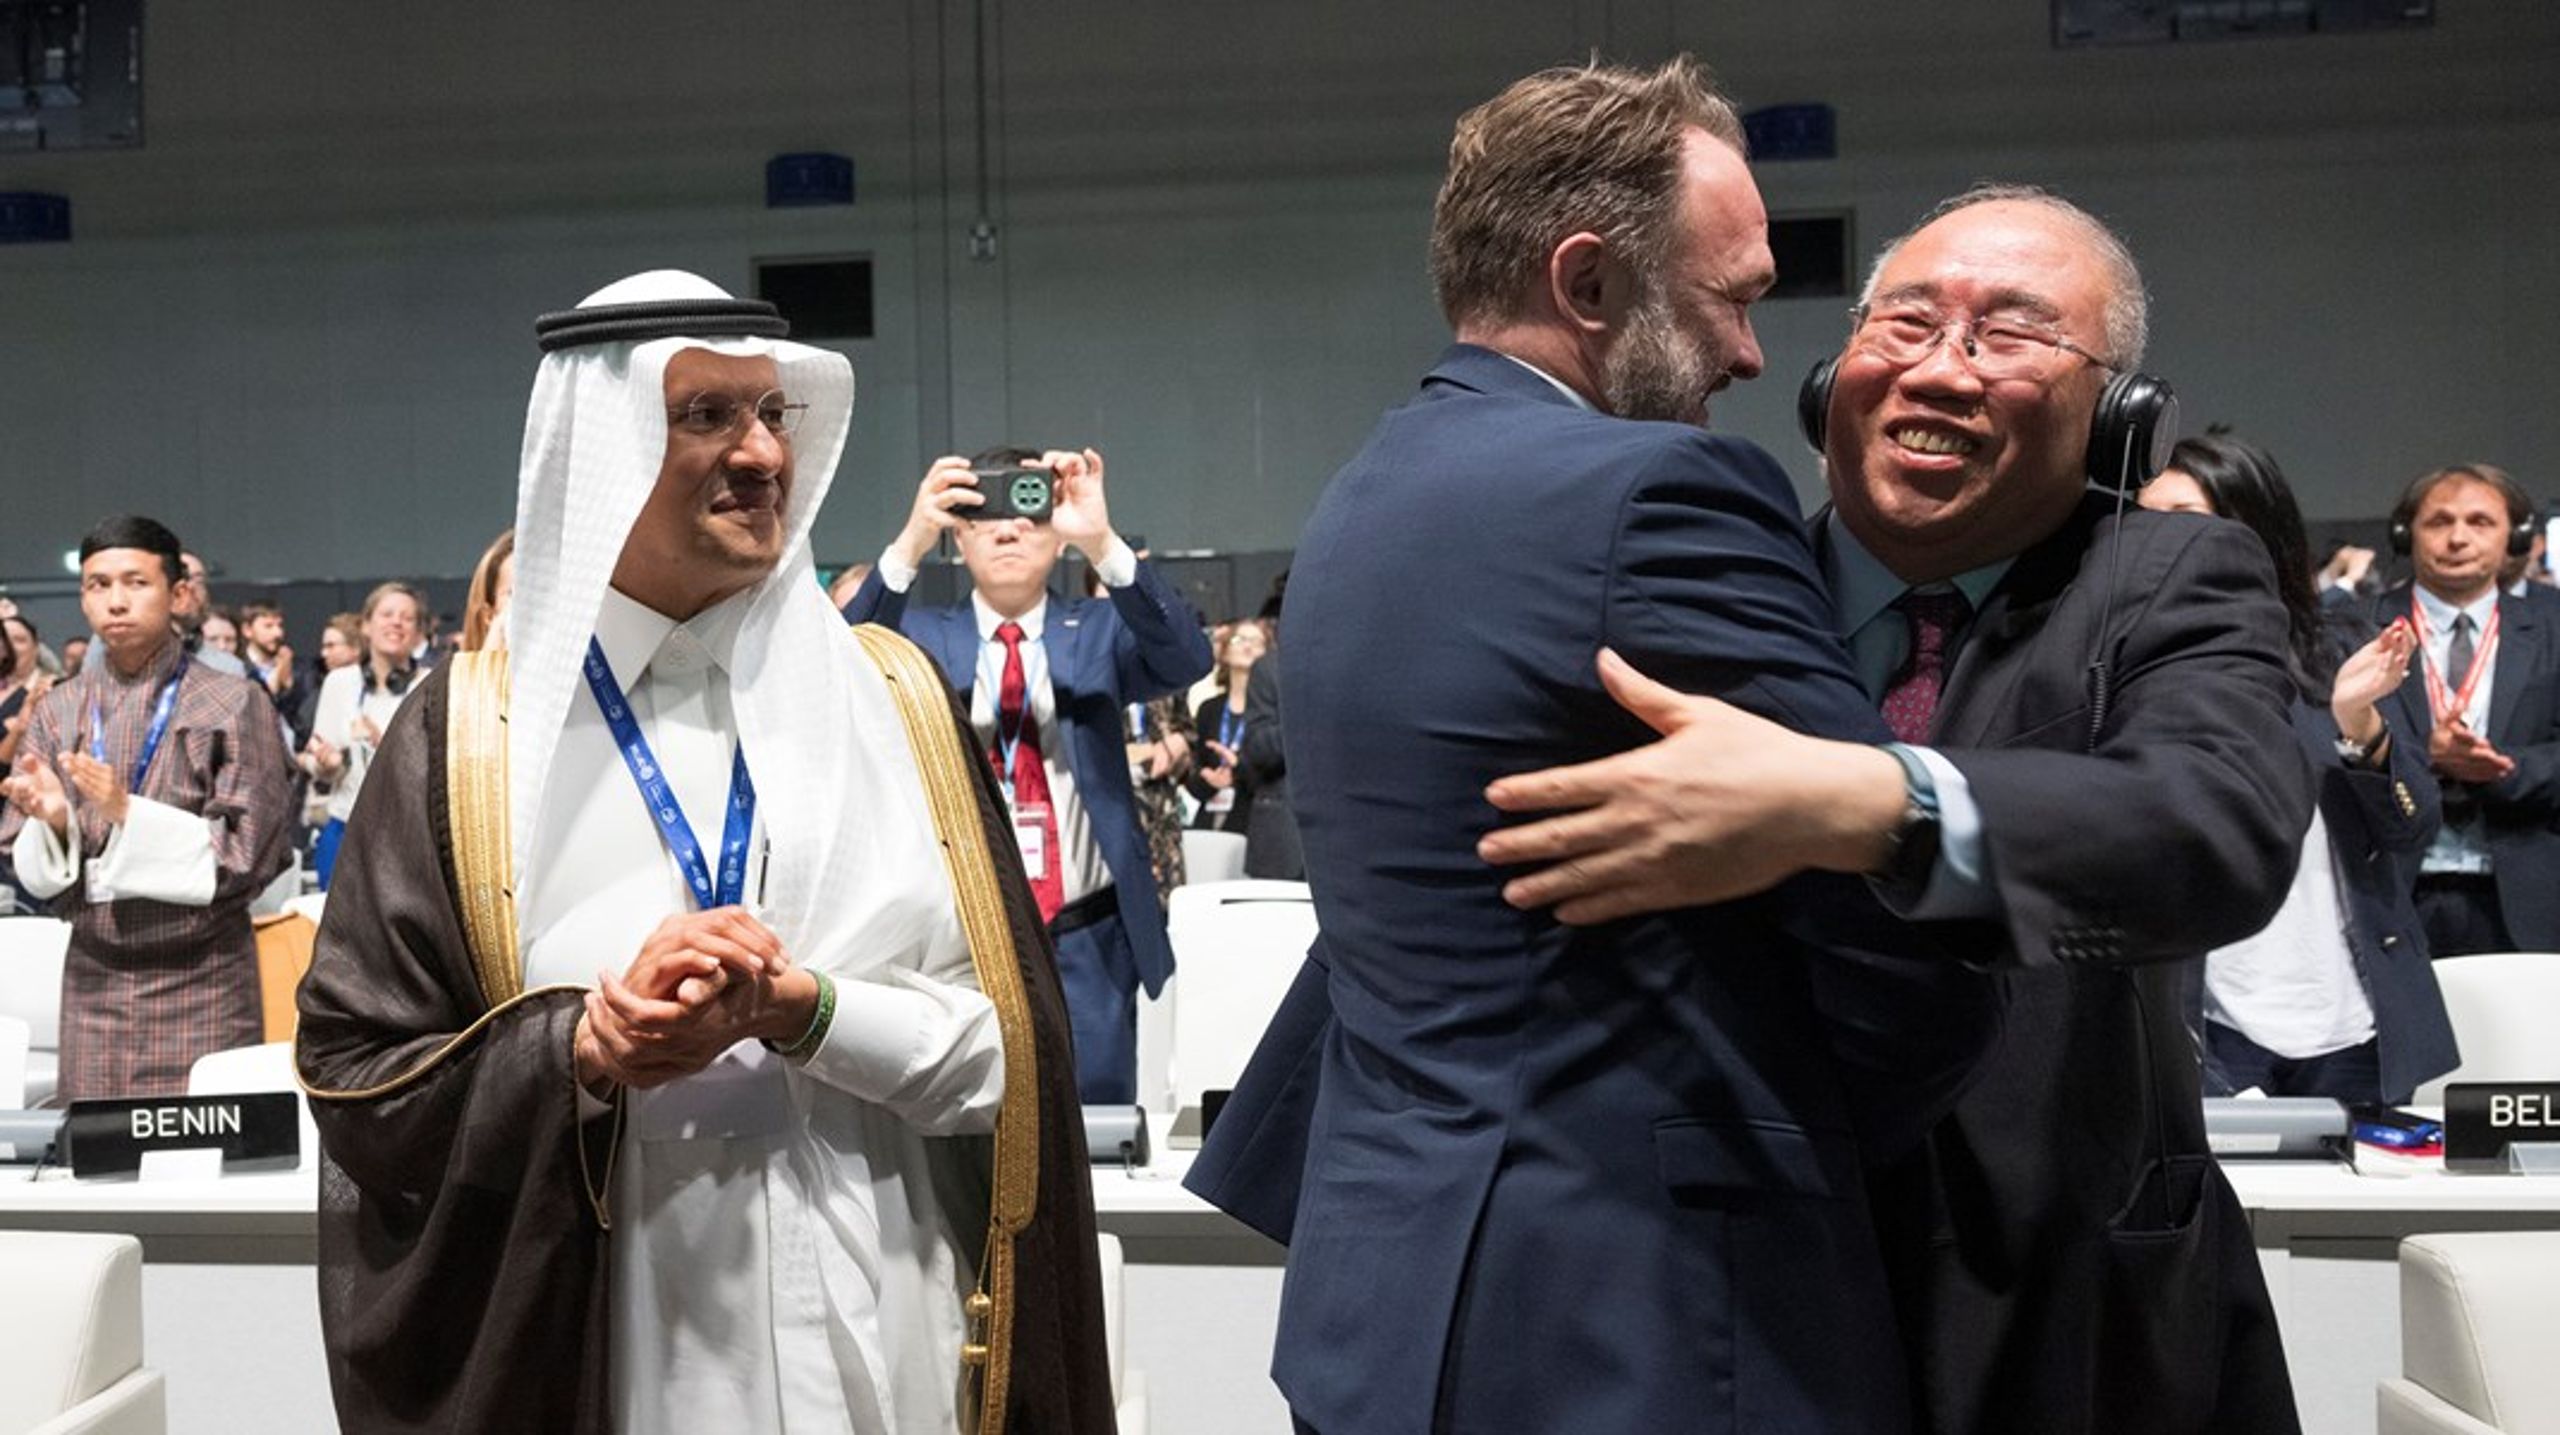 Det övergripande rambeslutet är klart på klimatmötet i Dubal.&nbsp;Danmarks klimatminister Dan Jørgensen kramar
 om Kinas förhandlare Xie Zhenhua. Bredvis står Saudiarabiens 
energiminister Abdulaziz bin Salman..<br>